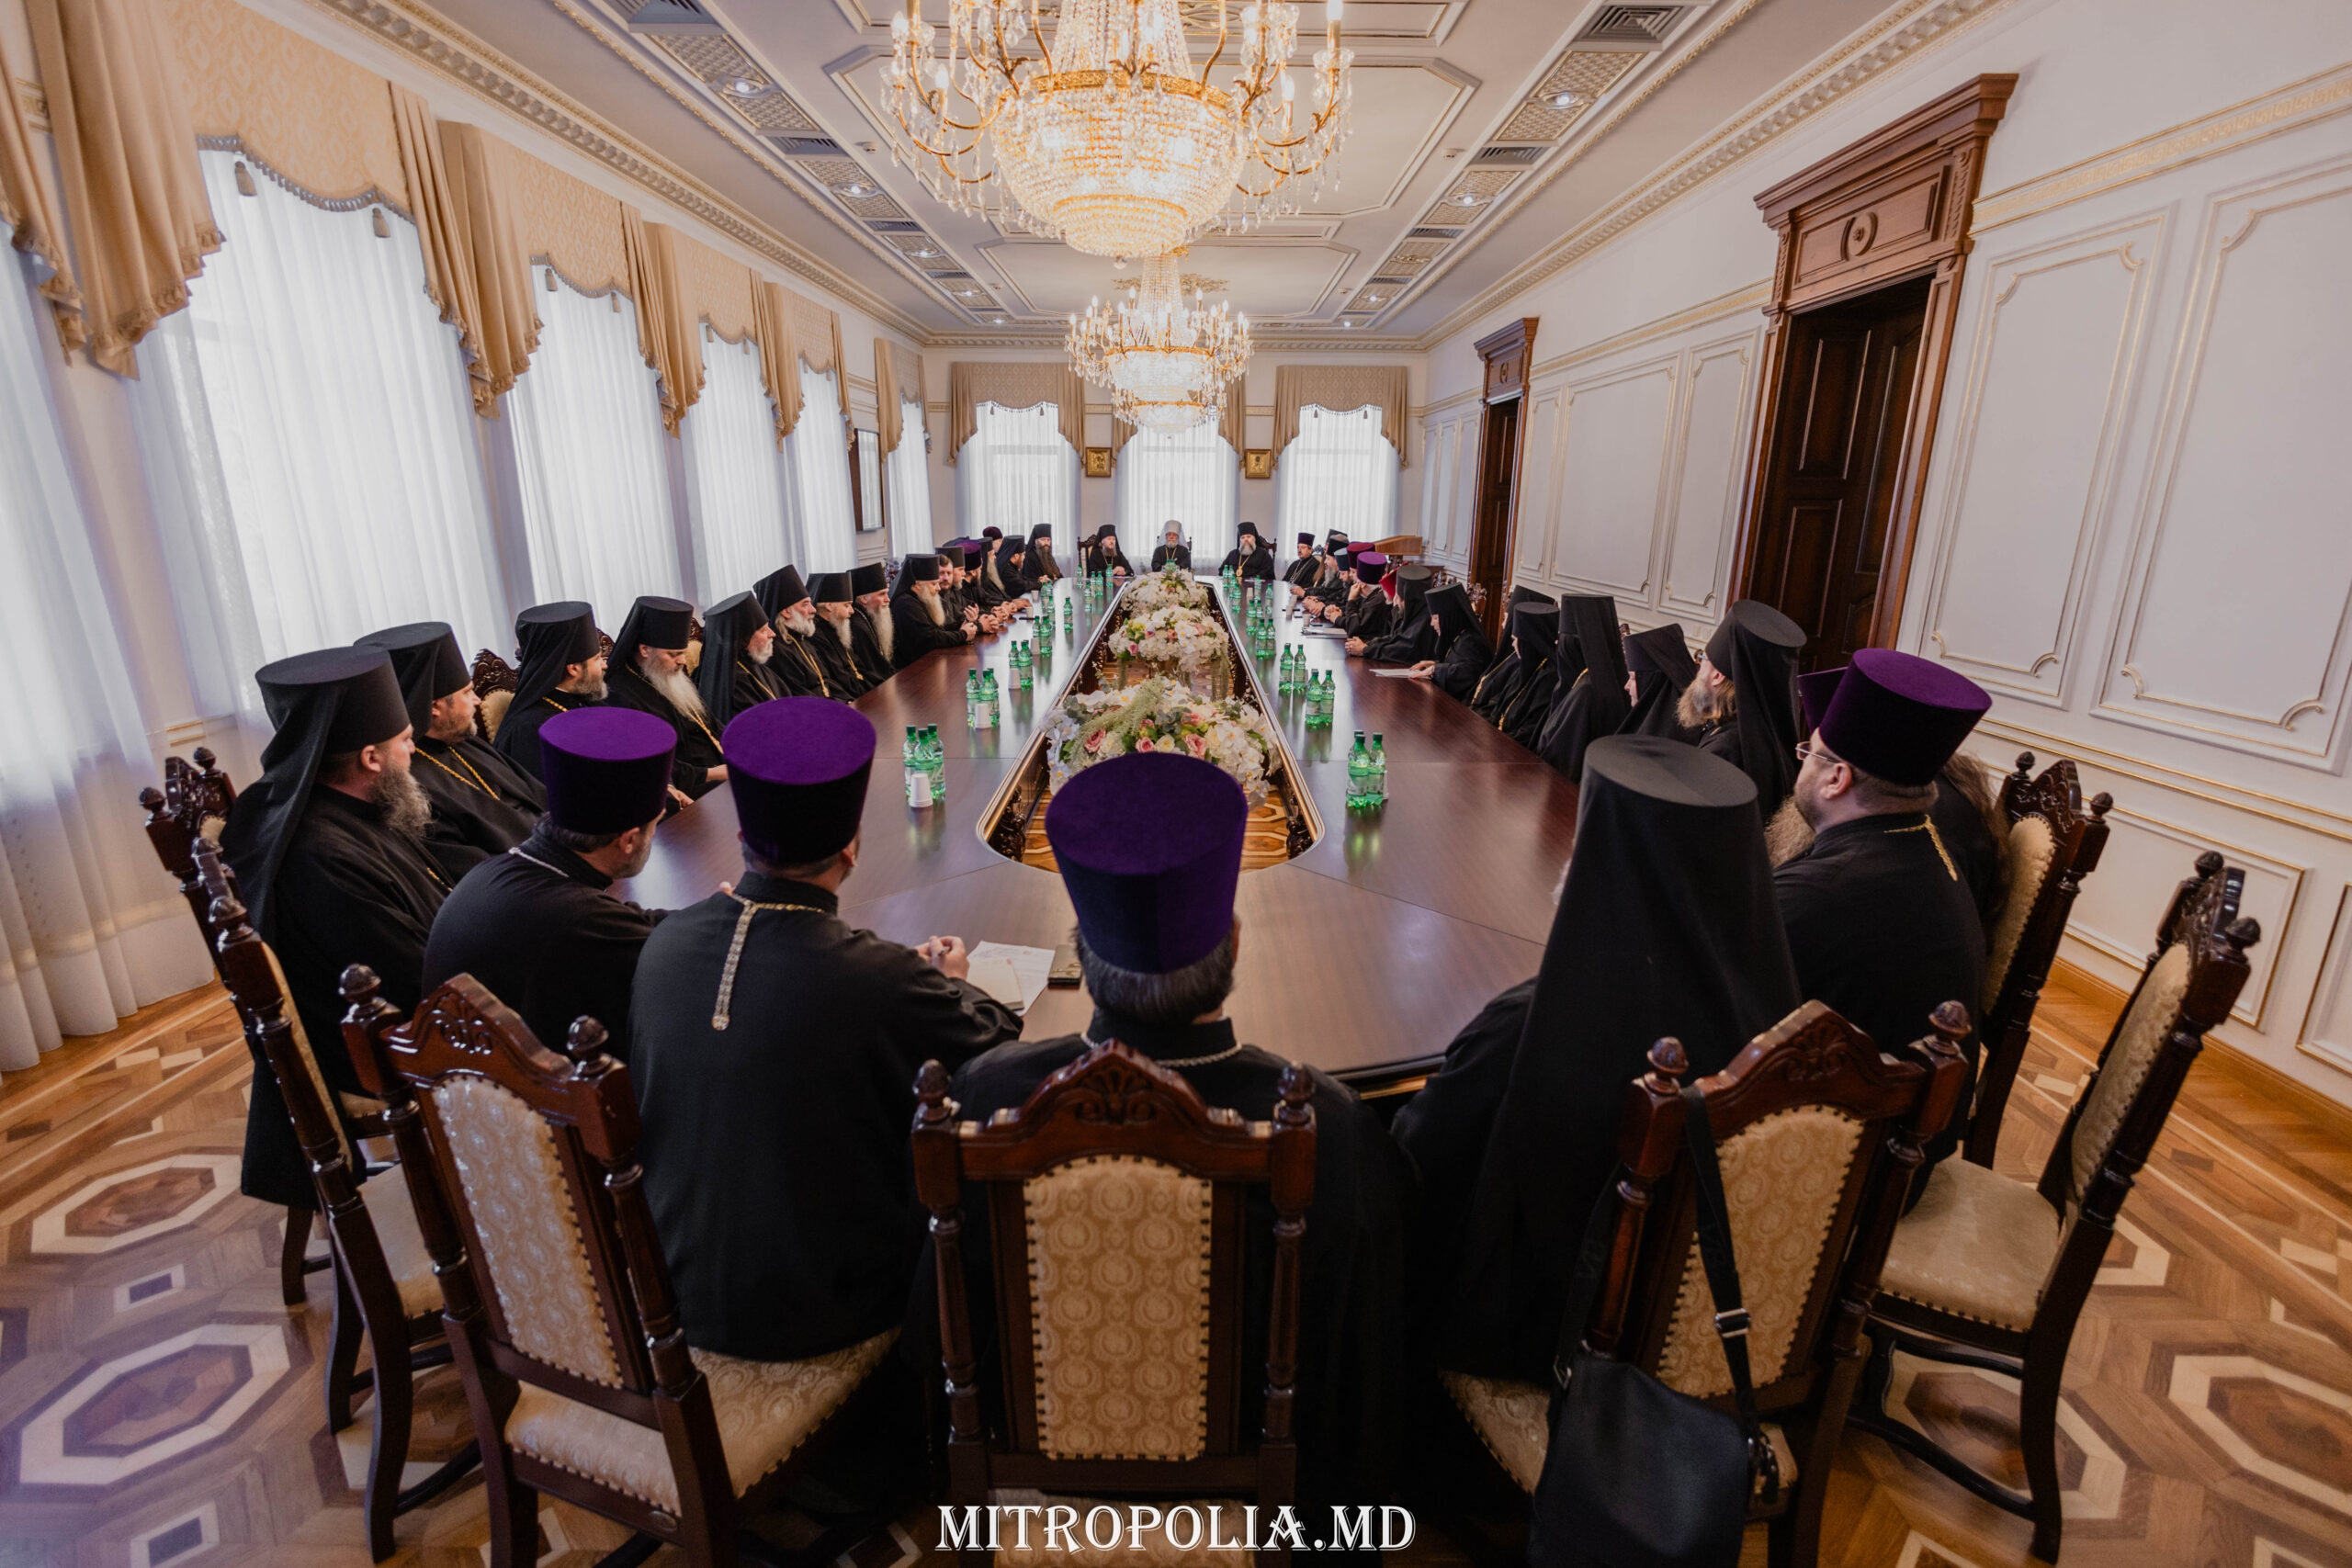 Le clergé du diocèse de chișinău de l’Église orthodoxe de moldavie confirme sa fidélité au métropolite vladimir